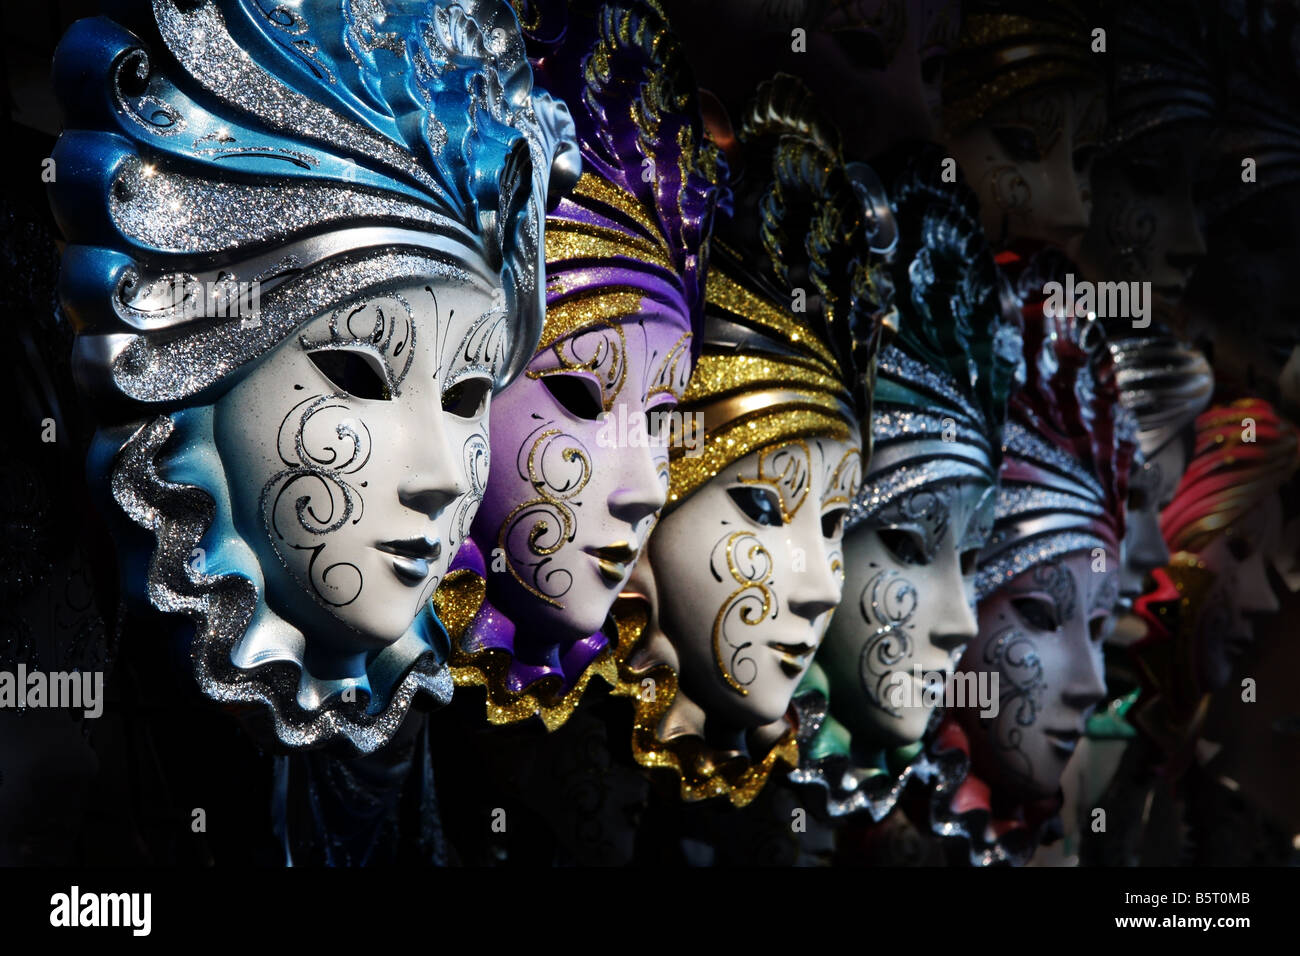 Fila de máscaras venecianas en oro y azul Foto de stock